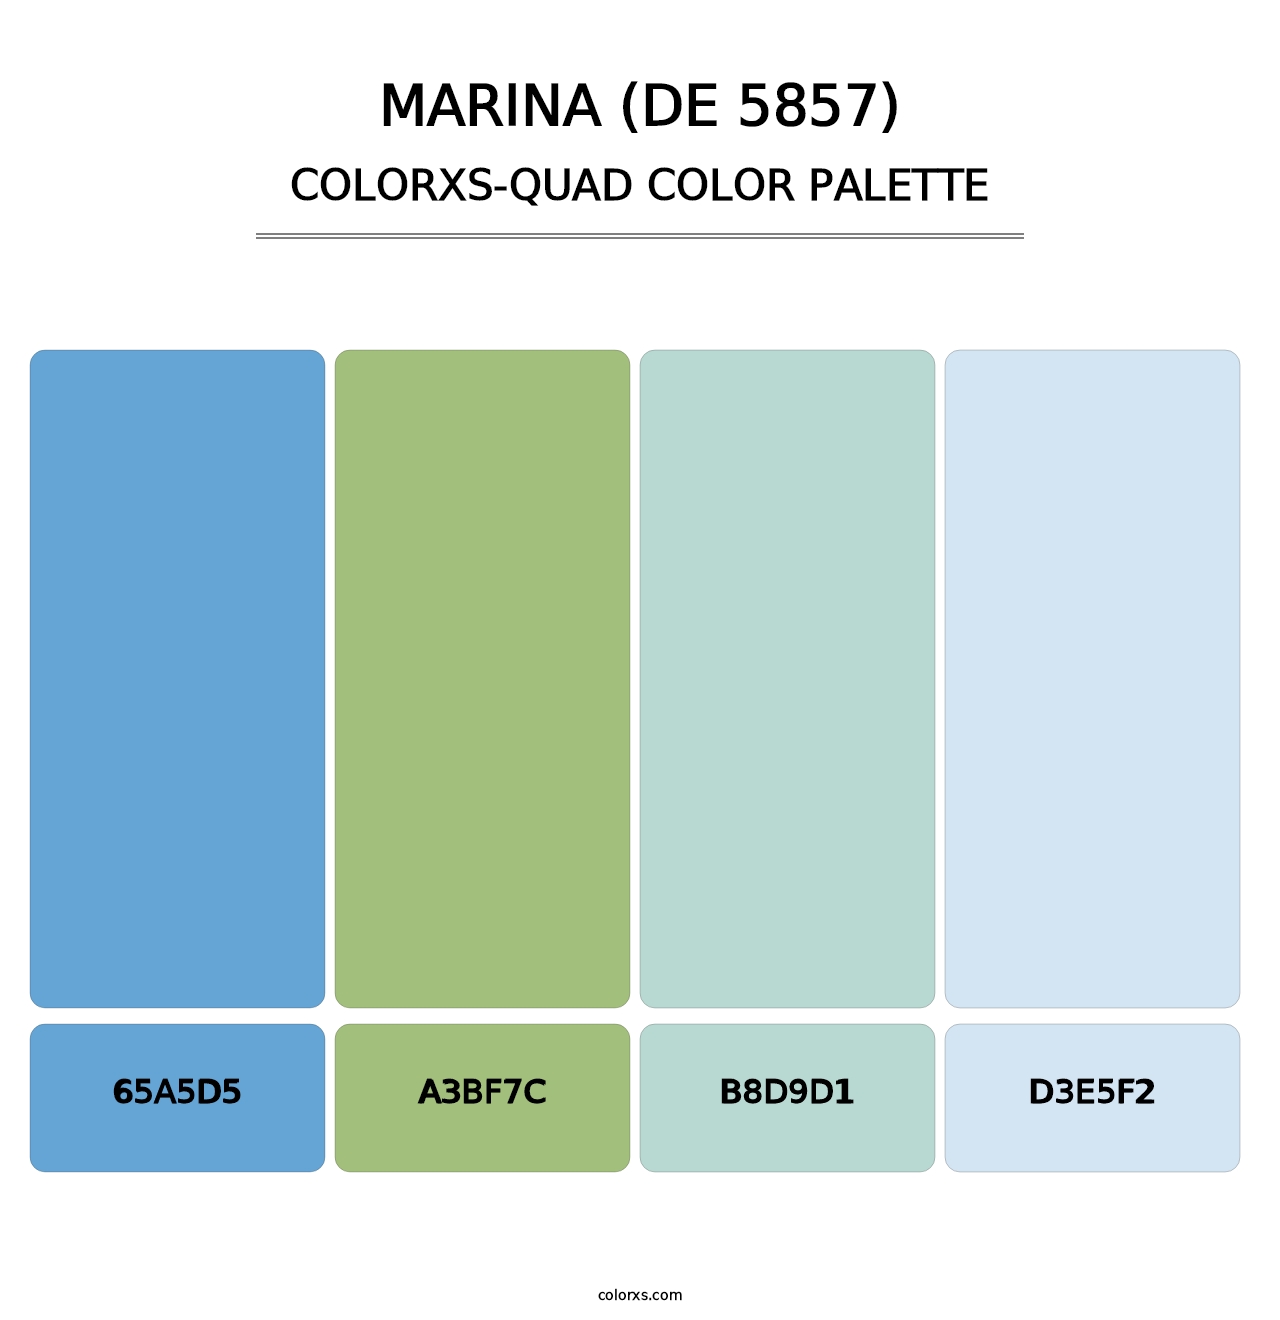 Marina (DE 5857) - Colorxs Quad Palette